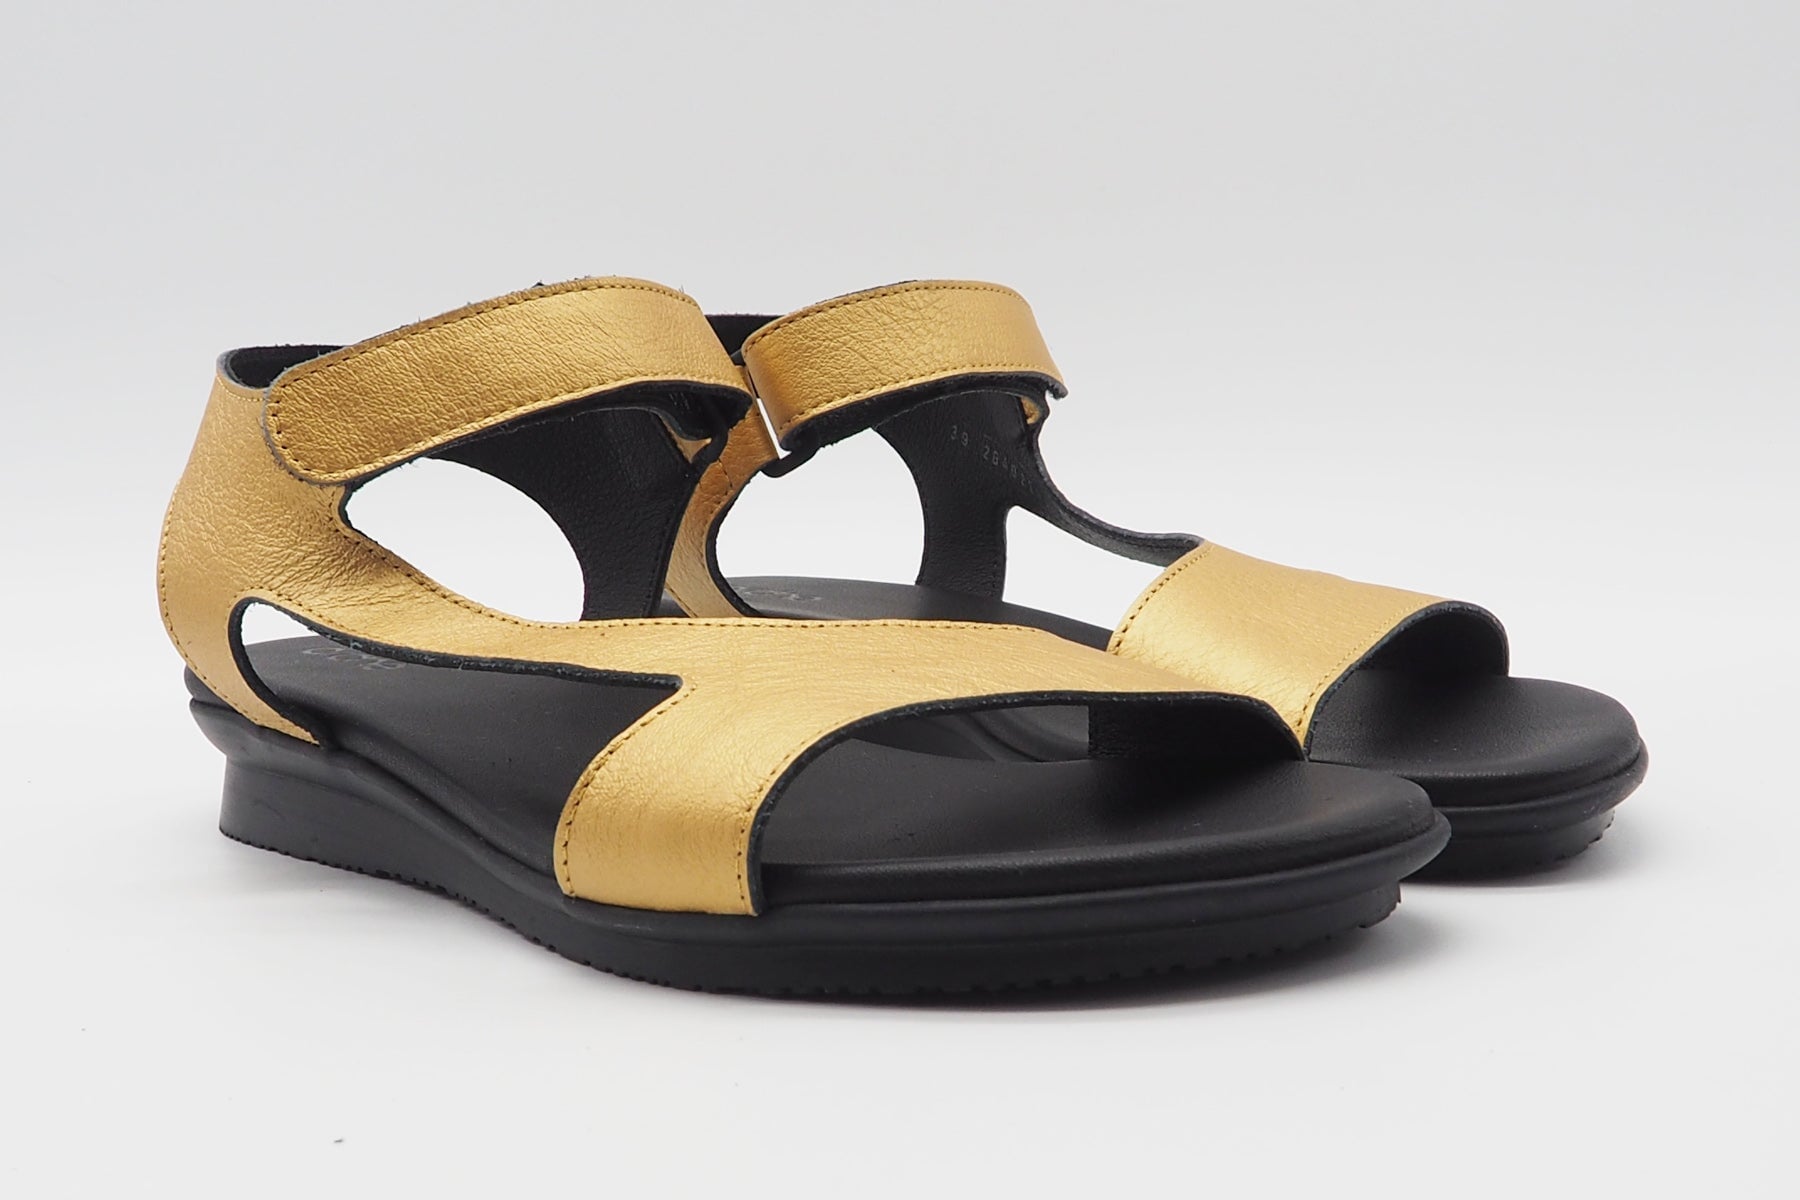 Damen Sandale aus Metallicleder in Gold - Auhako - Absatz 3cm Damen Sandalen Arche 